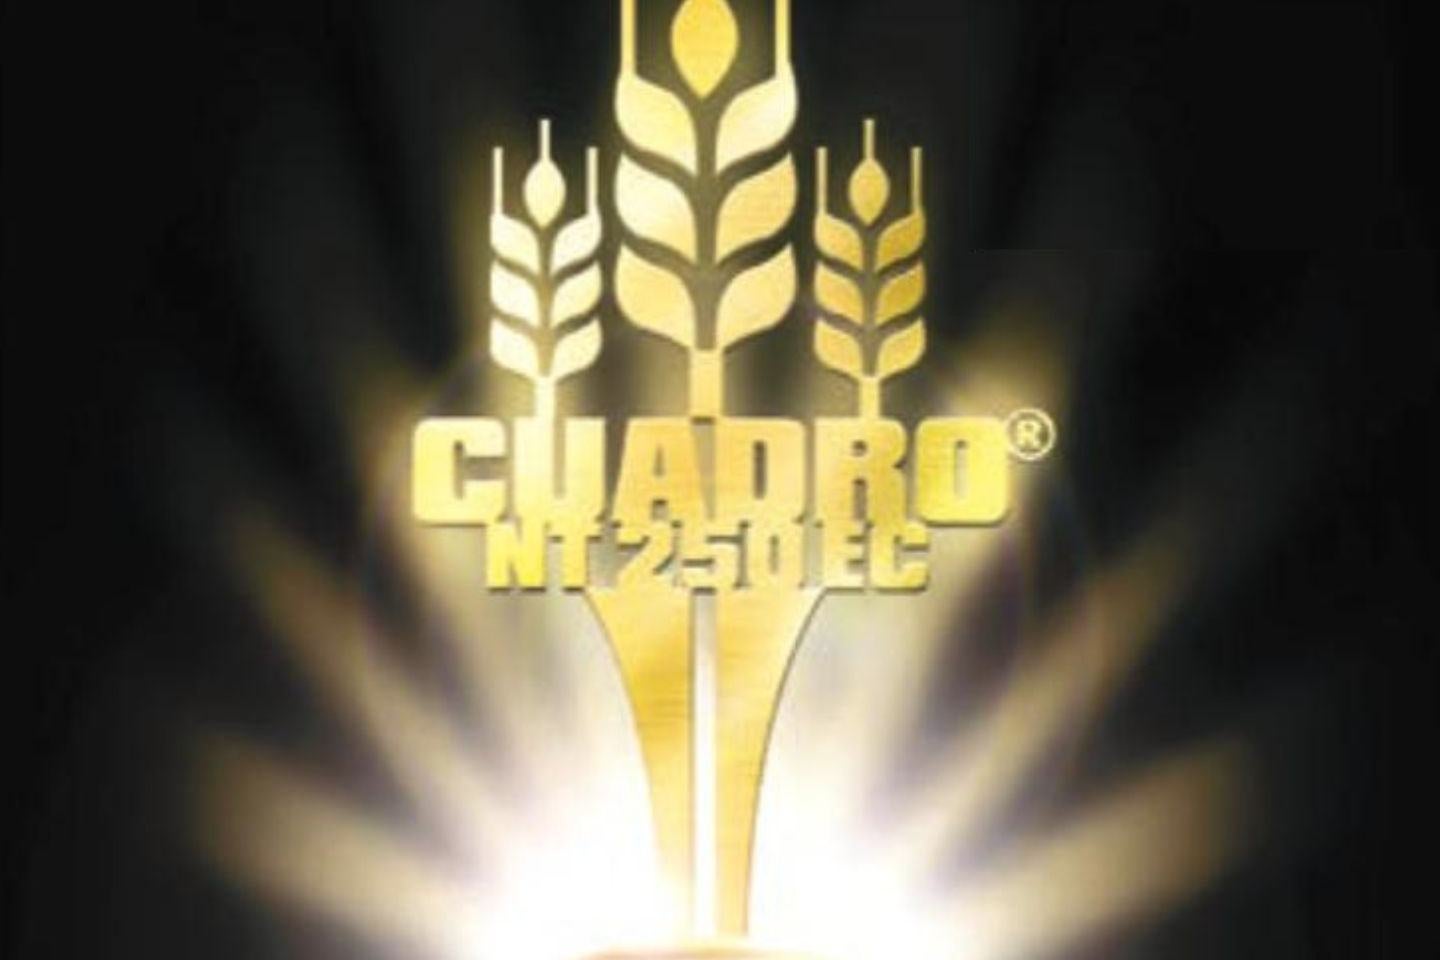 Cuadro® NT 250 EC - Solidna podstawa wysokich plonów zbóż